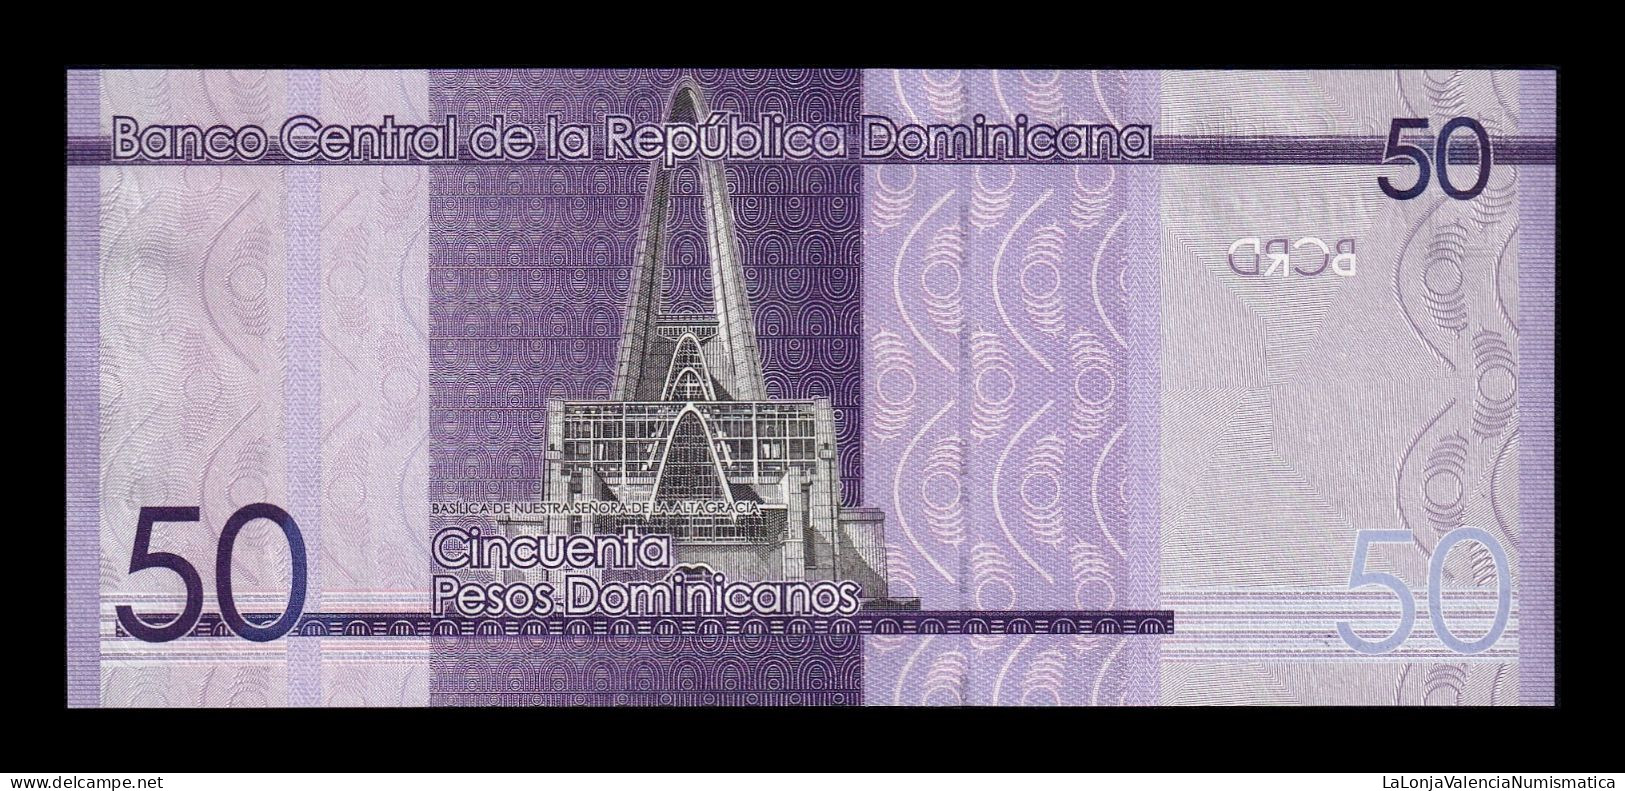 República Dominicana 50 Pesos Dominicanos 2019 Pick 189a Sc Unc - Dominicana